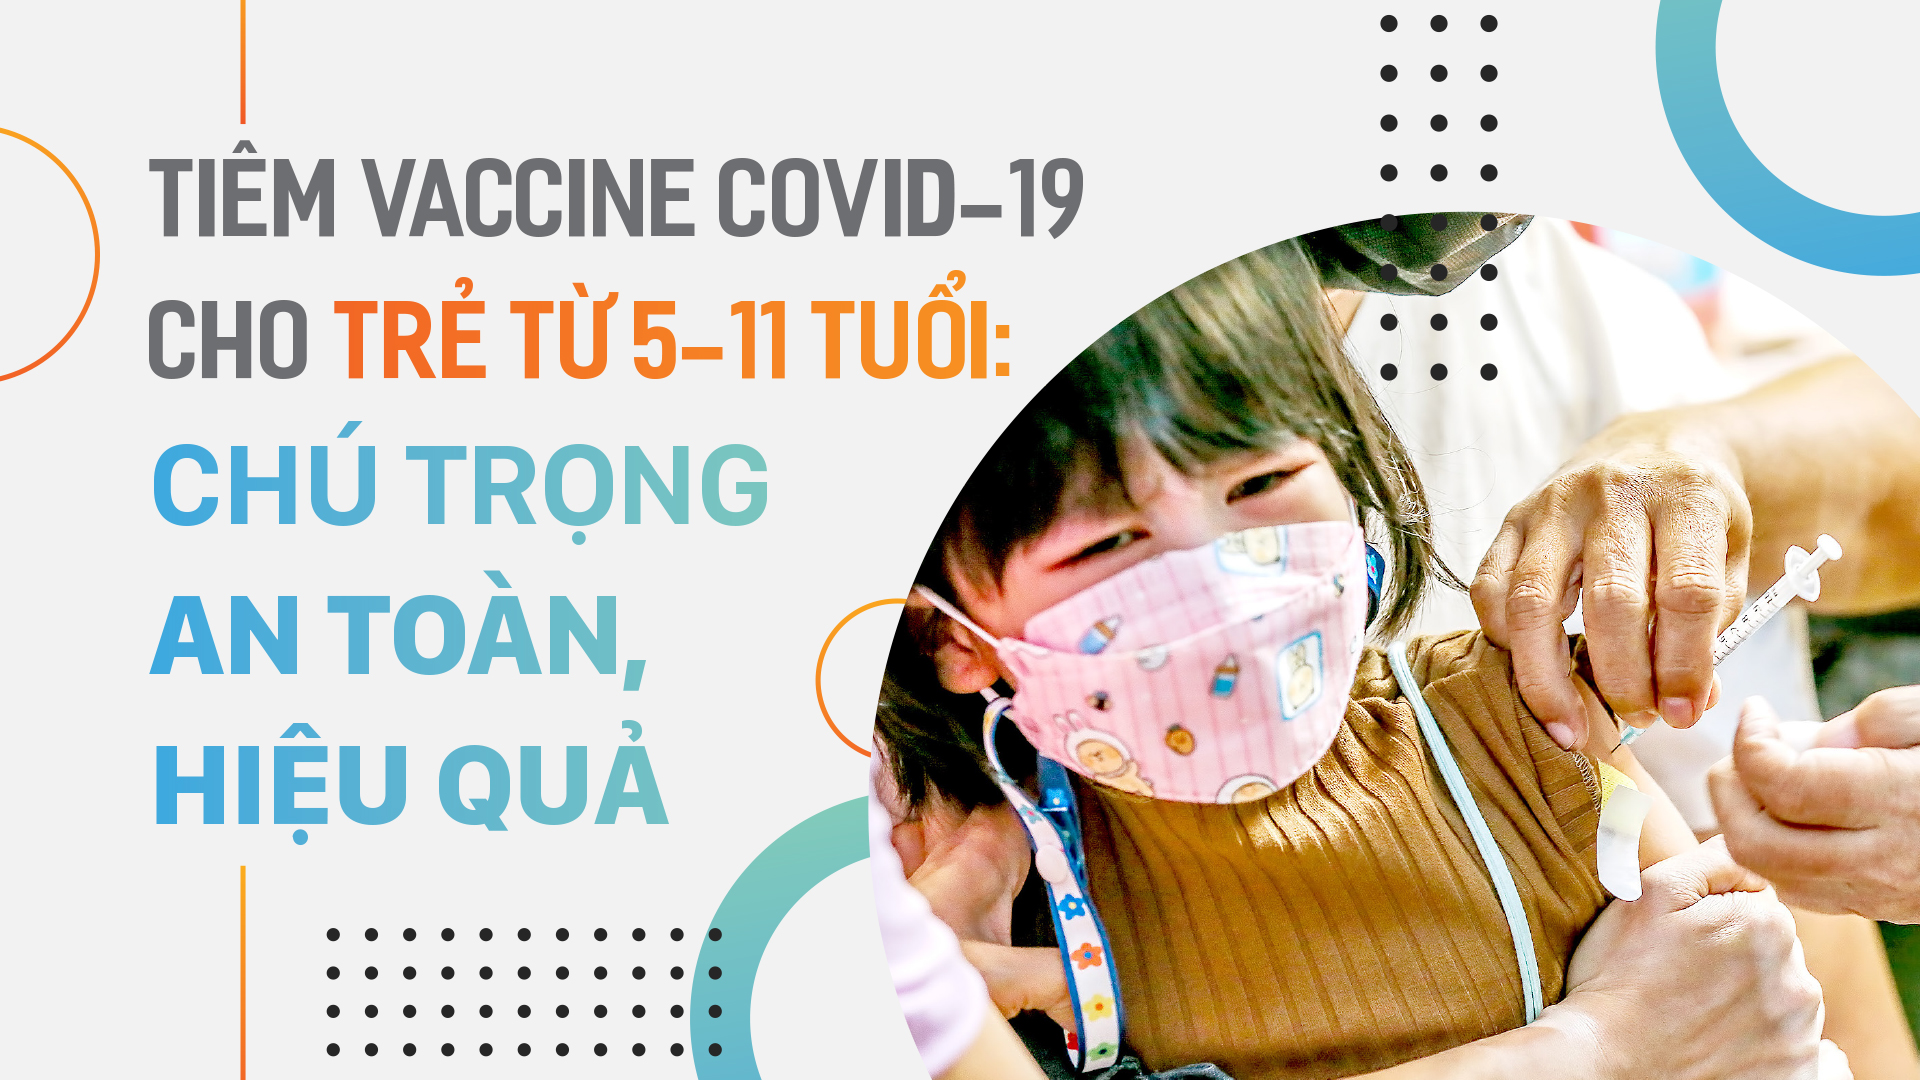 Tiêm vaccine Covid-19 cho trẻ từ 5-11 tuổi: Chú trọng an toàn, hiệu quả